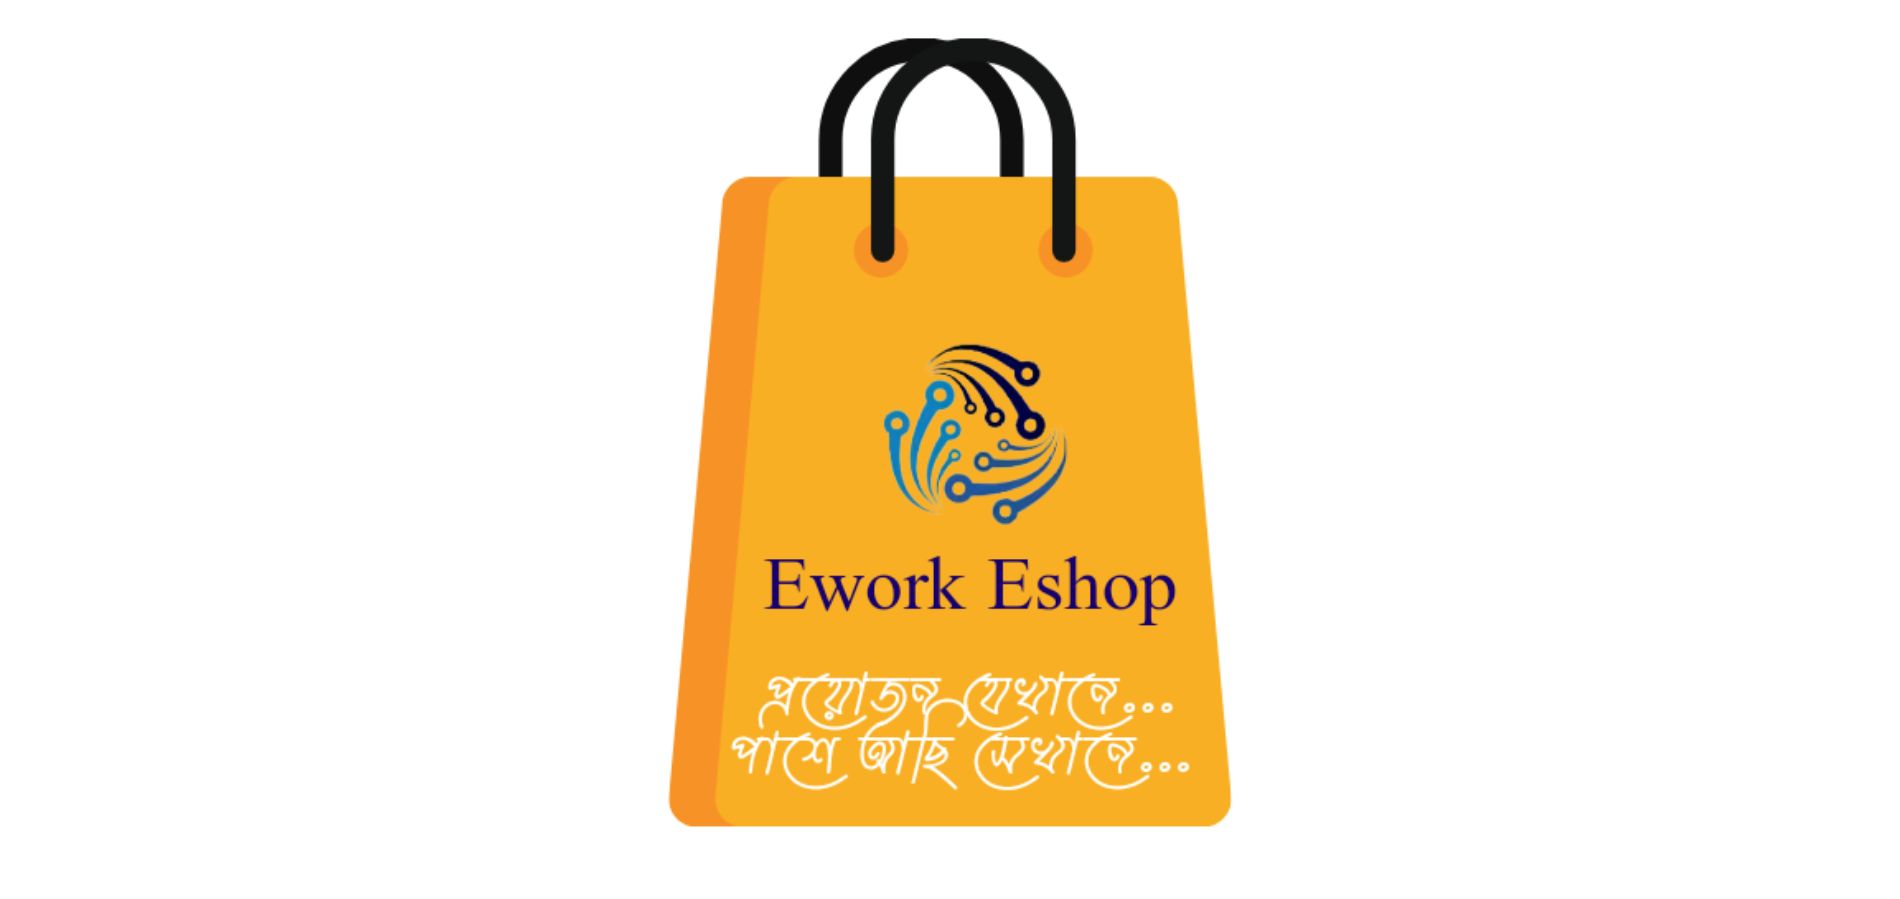 Ework Eshop